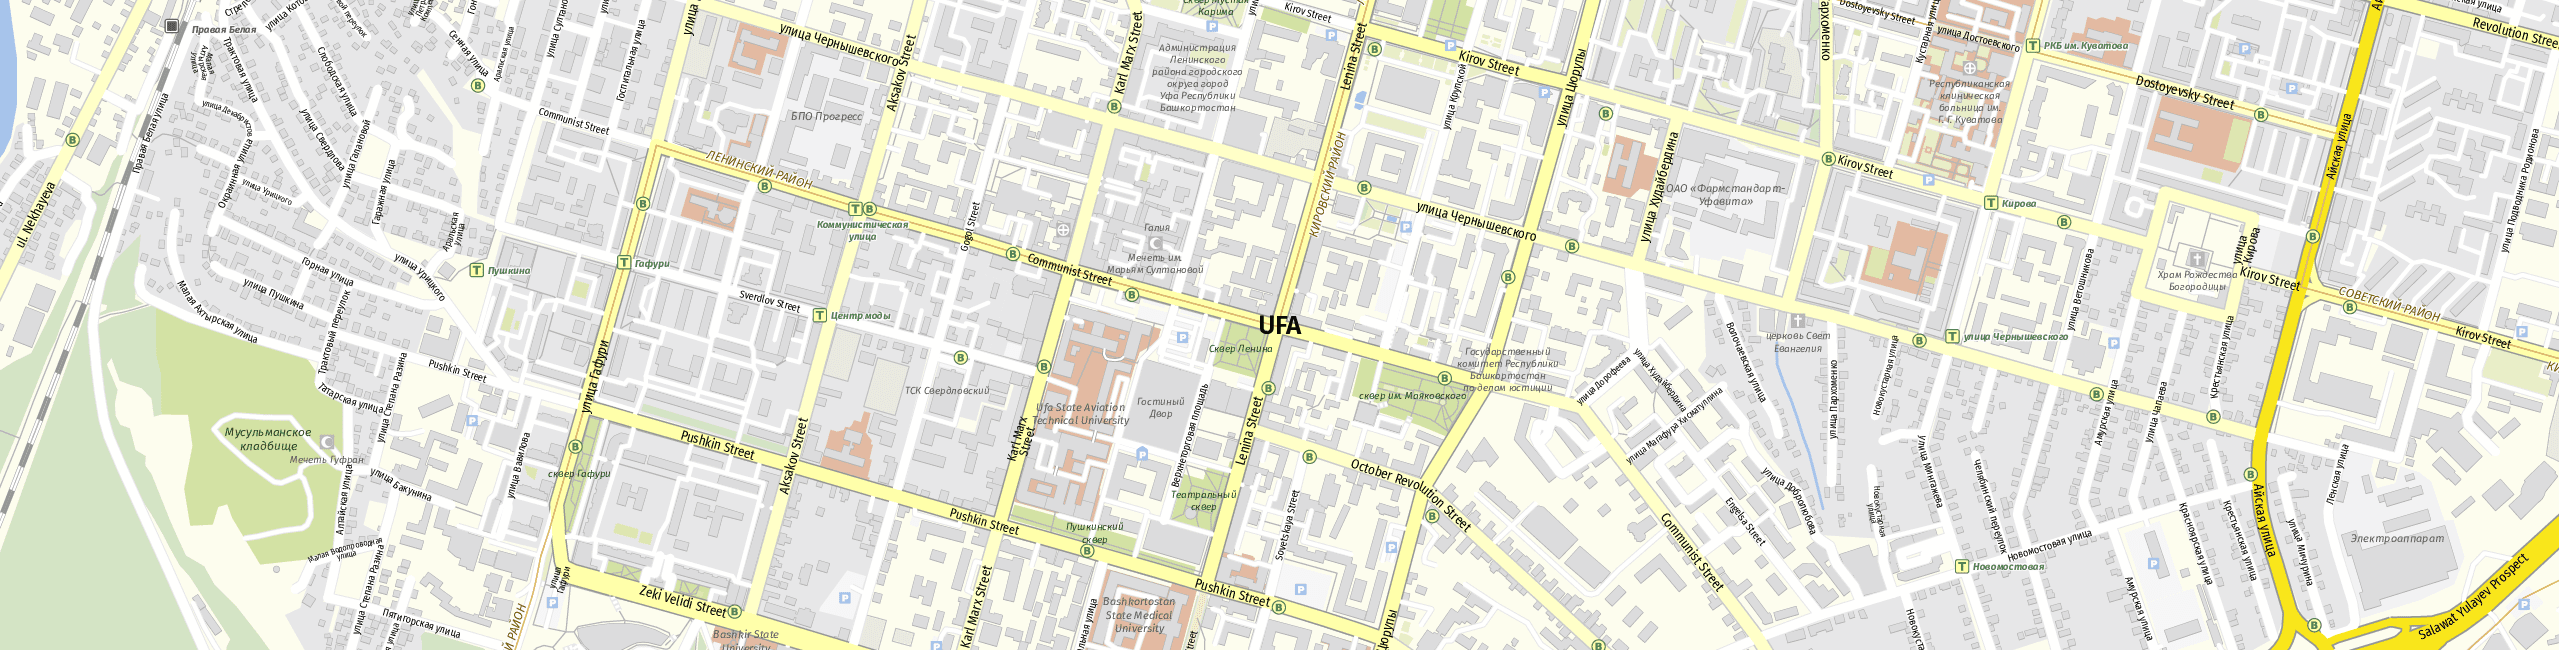 Stadtplan Ufa zum Downloaden.